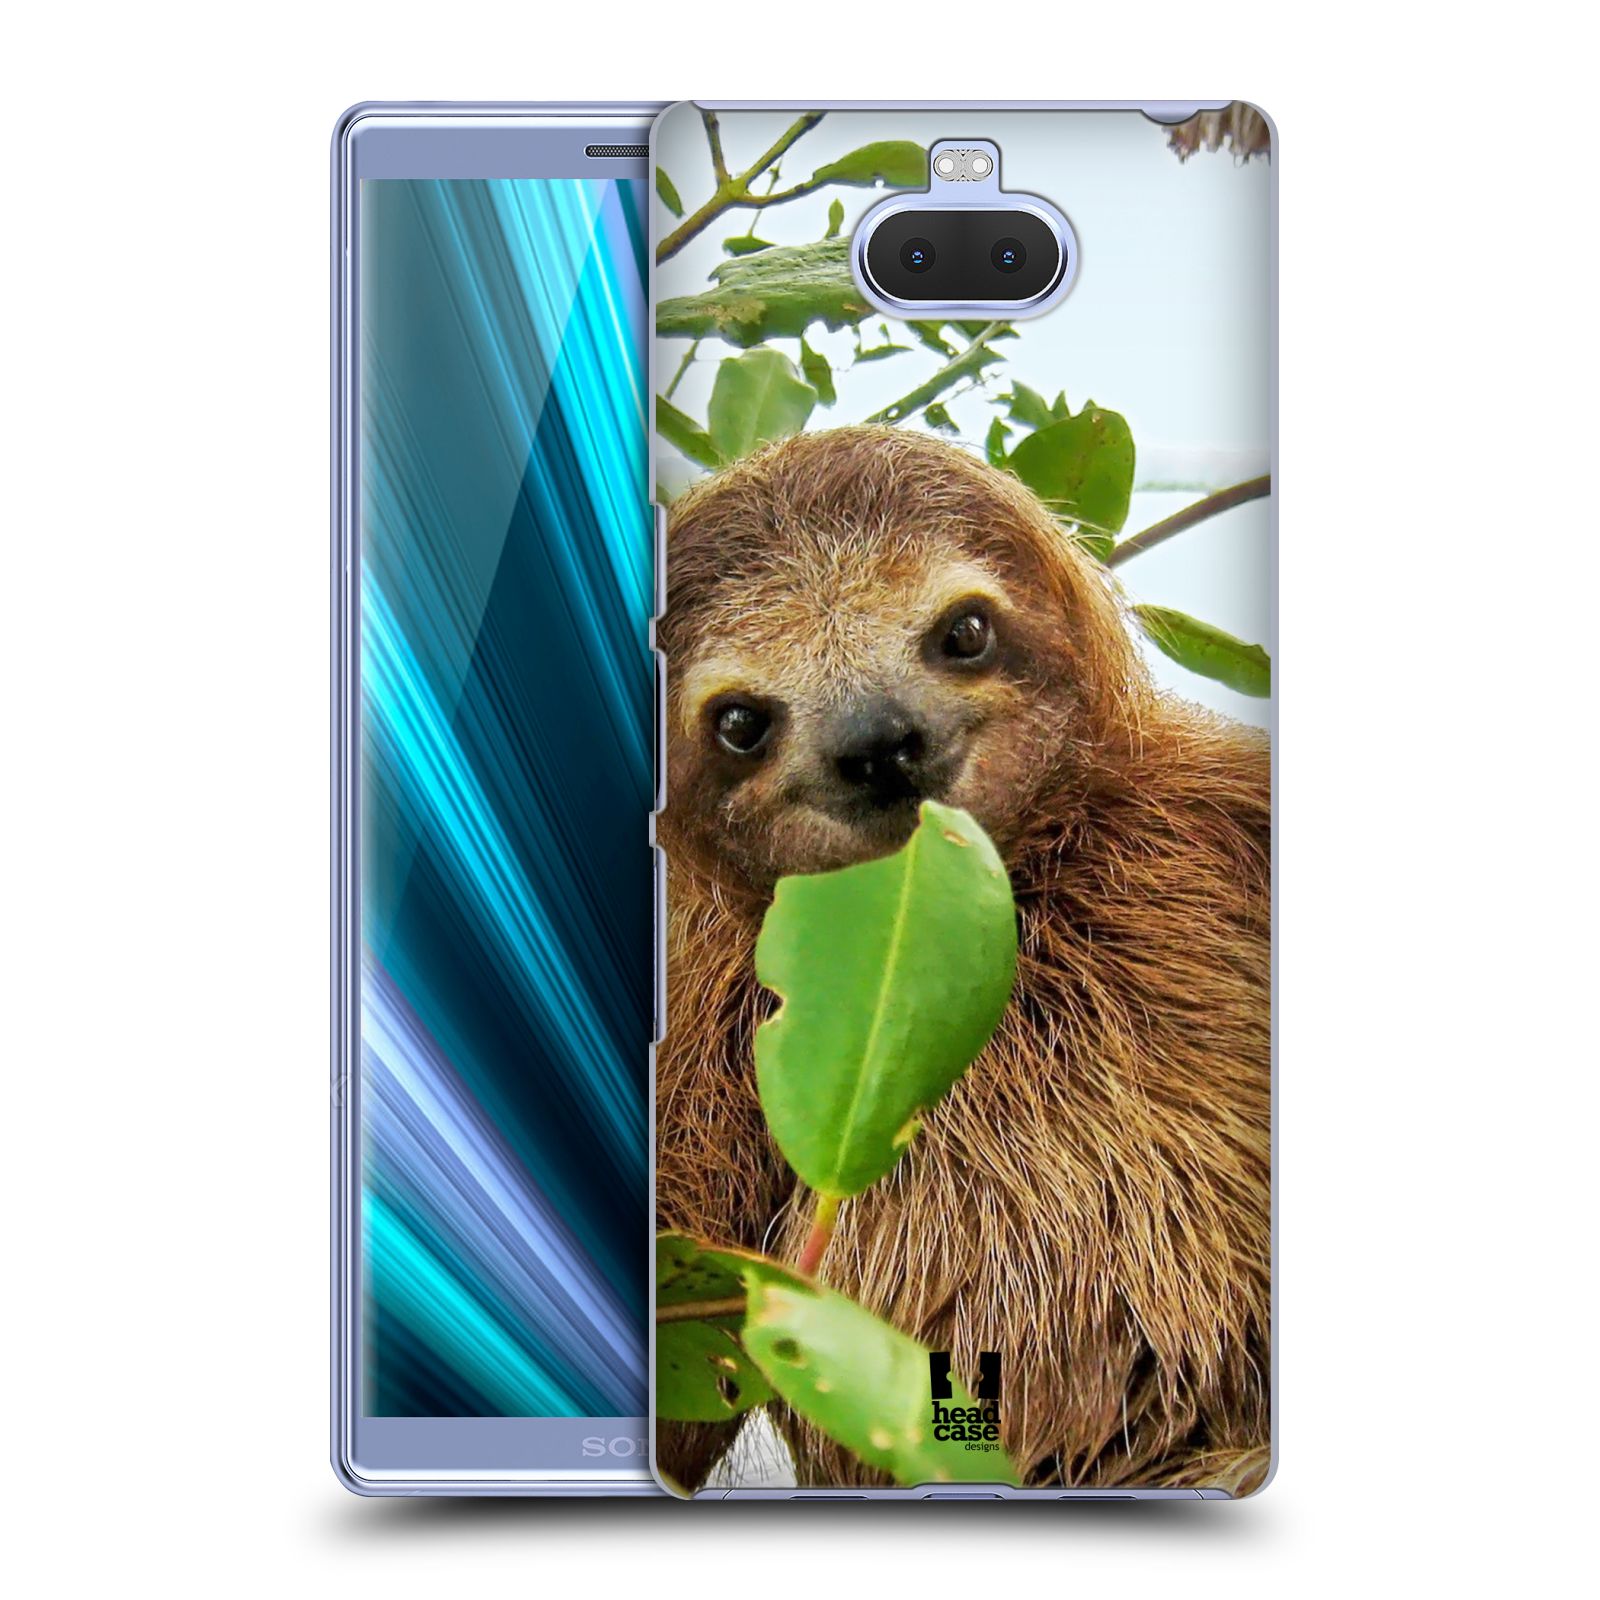 Pouzdro na mobil Sony Xperia 10 - Head Case - vzor slavná zvířata foto lenochod